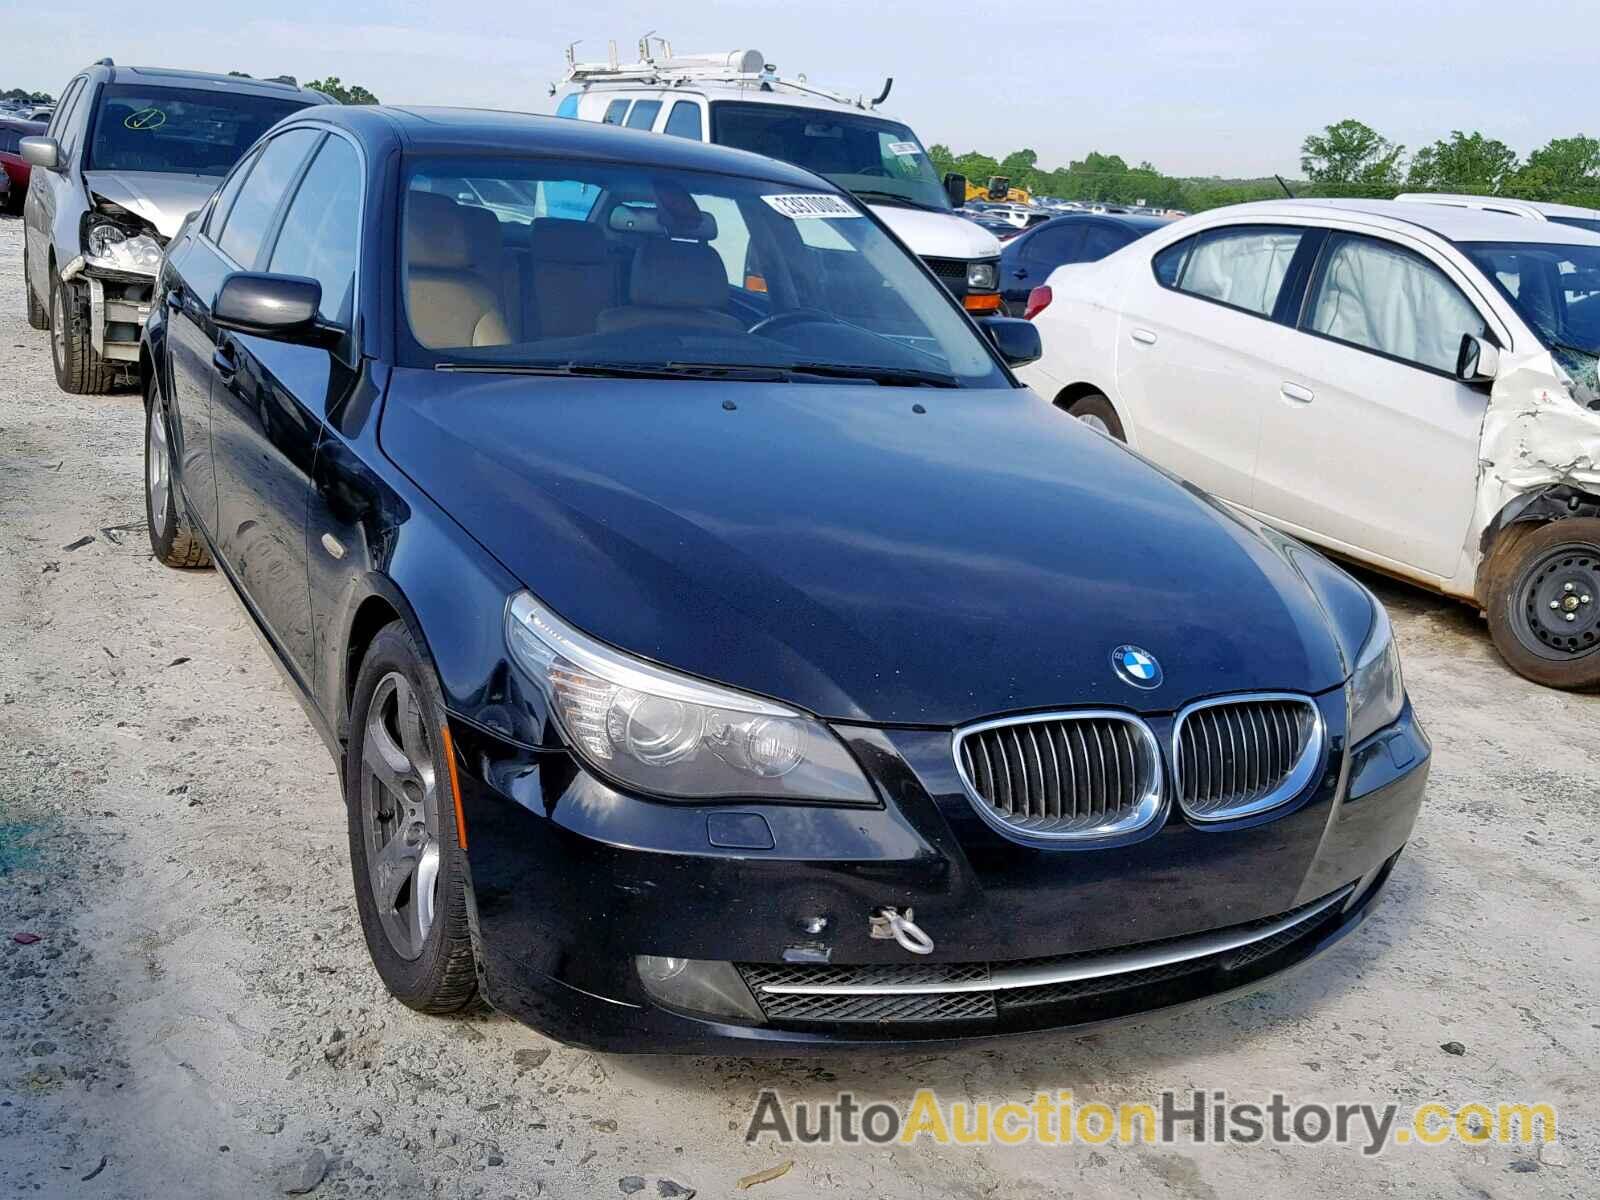 2008 BMW 535 I, WBANW13588CZ76939